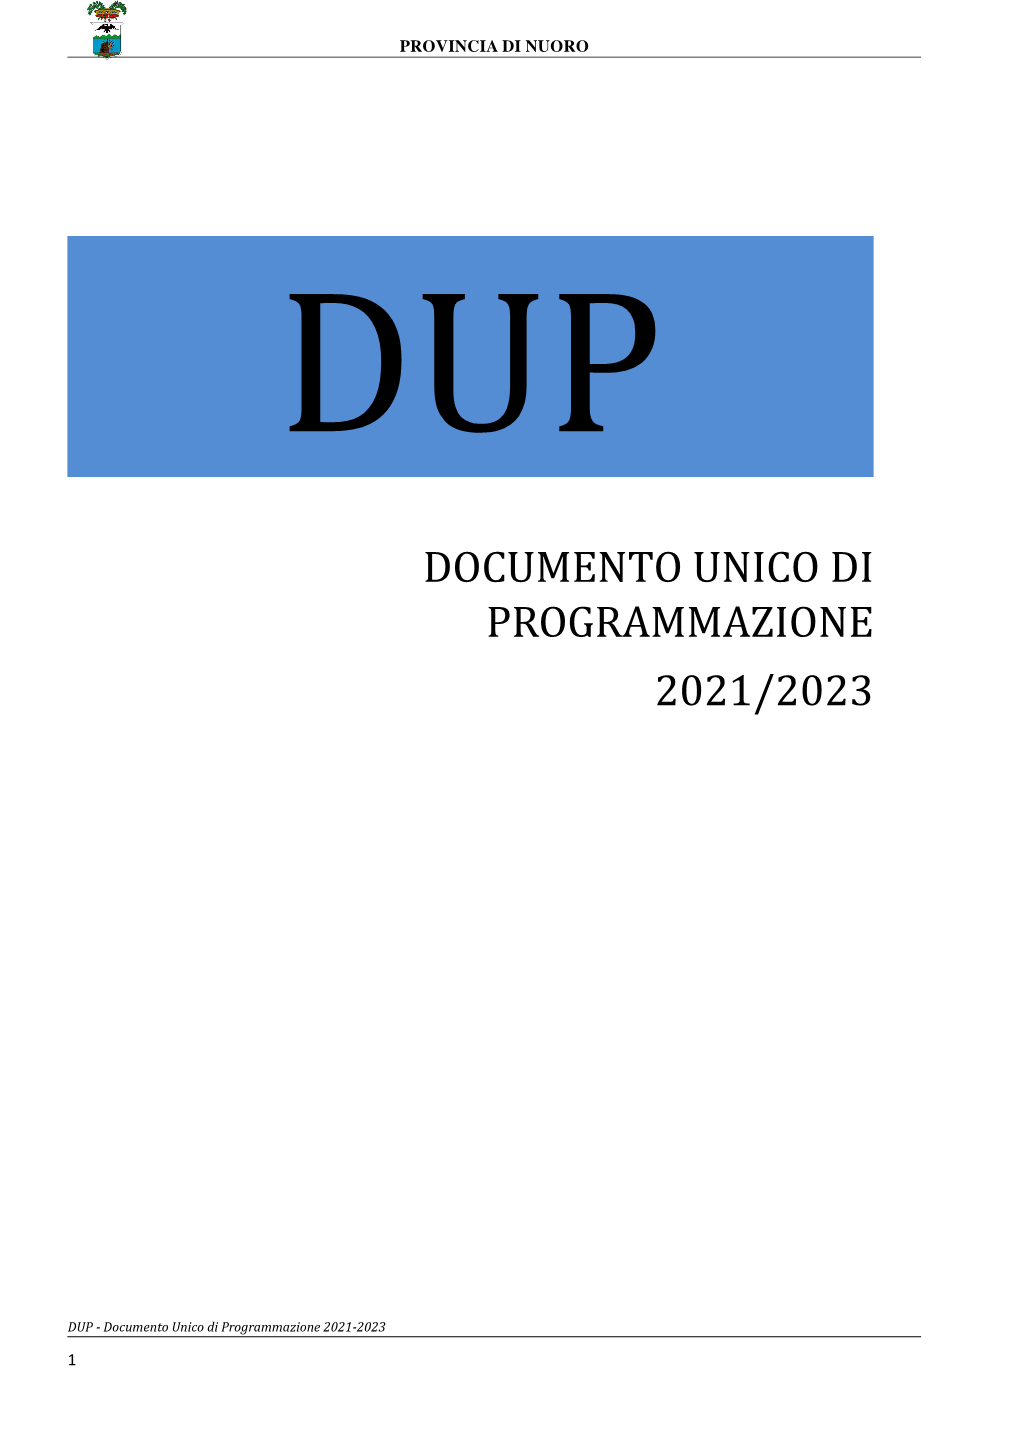 Documento Unico Di Programmazione 2021/2023